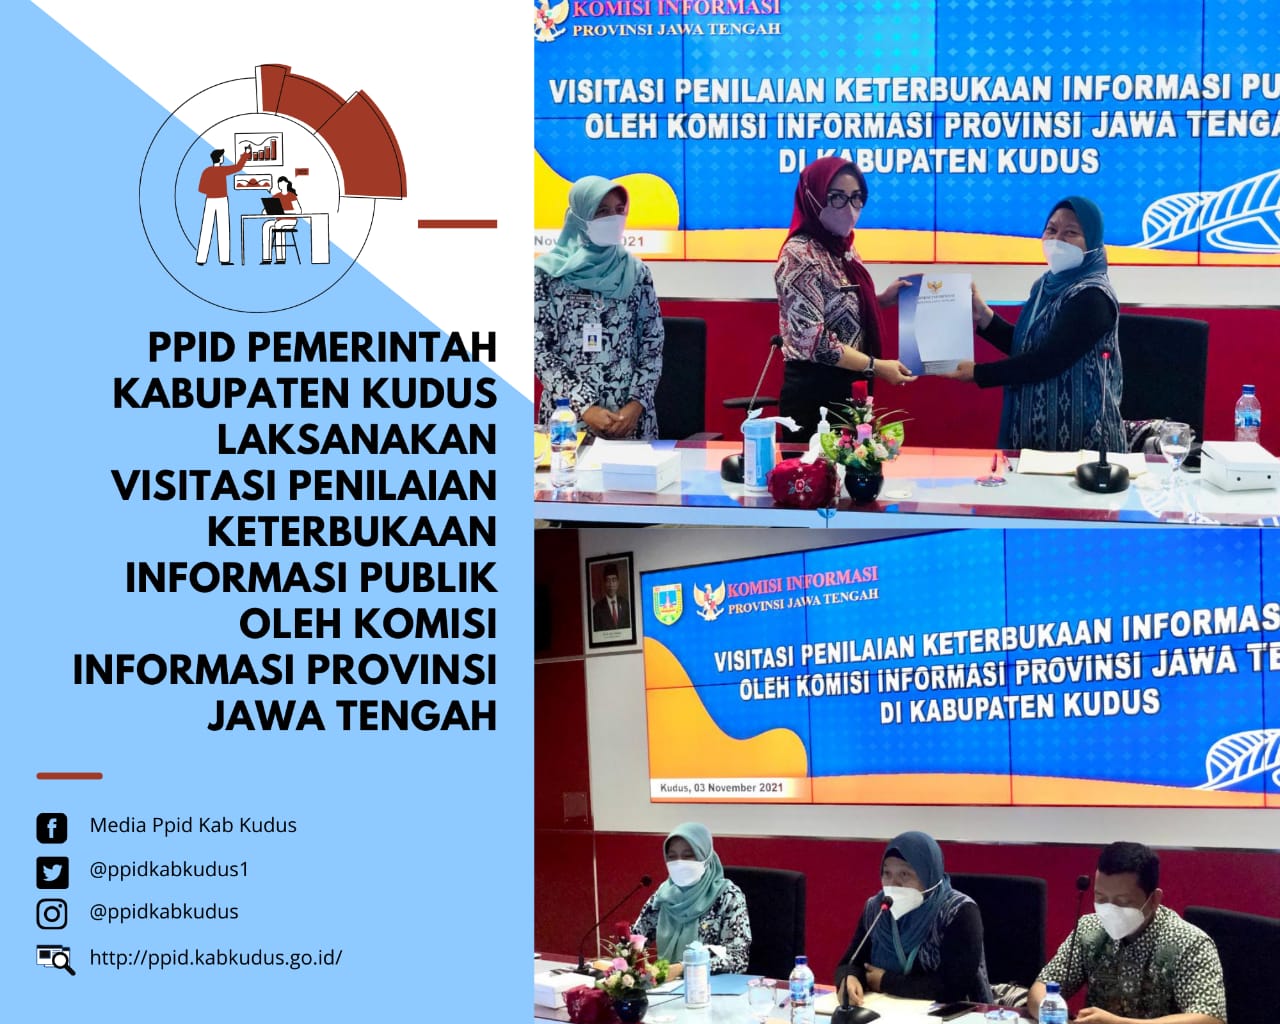 Pelaksanaan Visitasi Penilaian Keterbukaan Informasi Publik Tahun 2021 Oleh Komisi Informasi Jawa Tengah